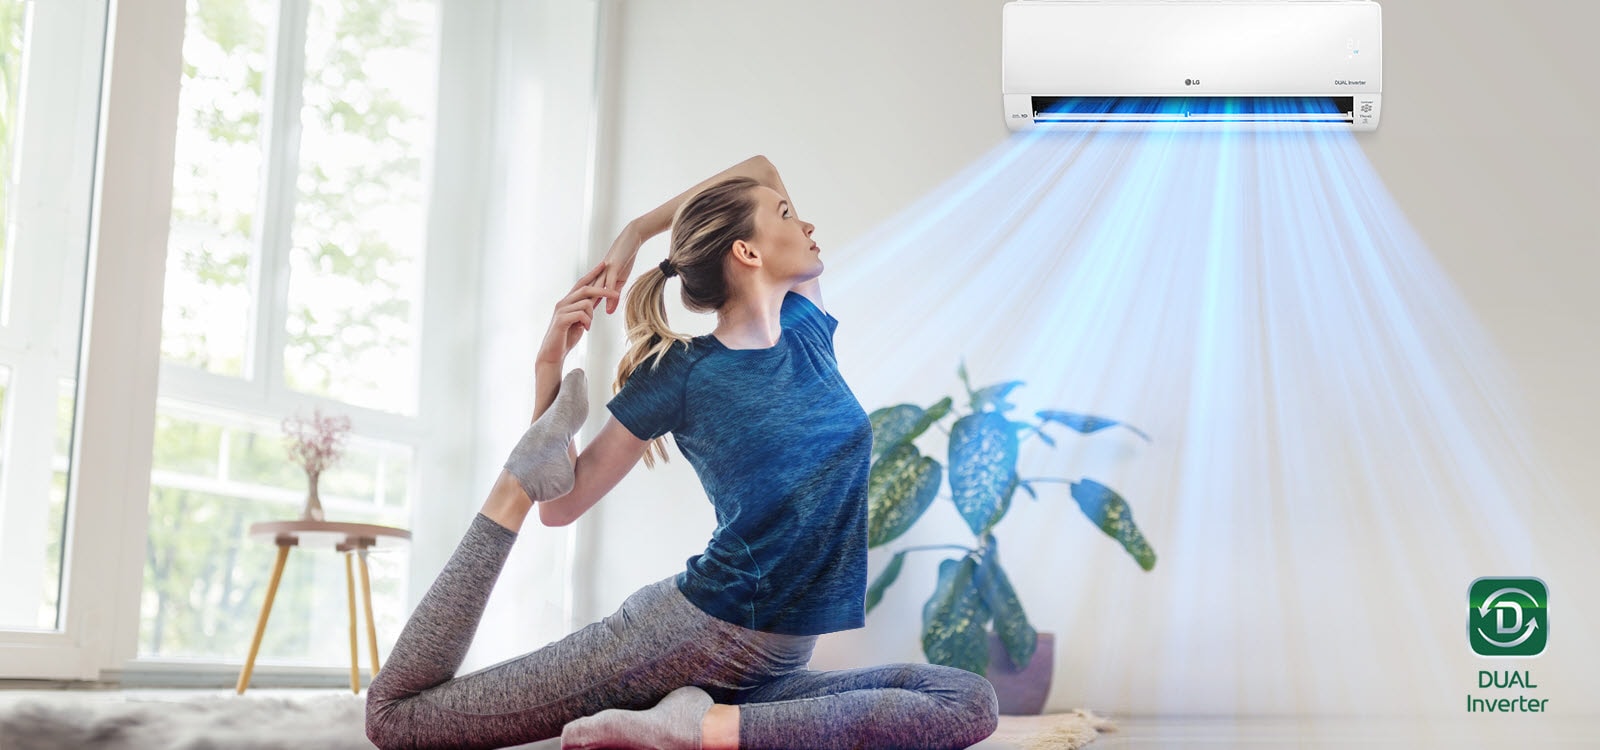 Žena se rasteže na podu. U pozadini je klima-uređaj i plavi zrak puše iznad žene i sobe. Logotip Dual Inverter nalazi se u donjem desnom kutu.